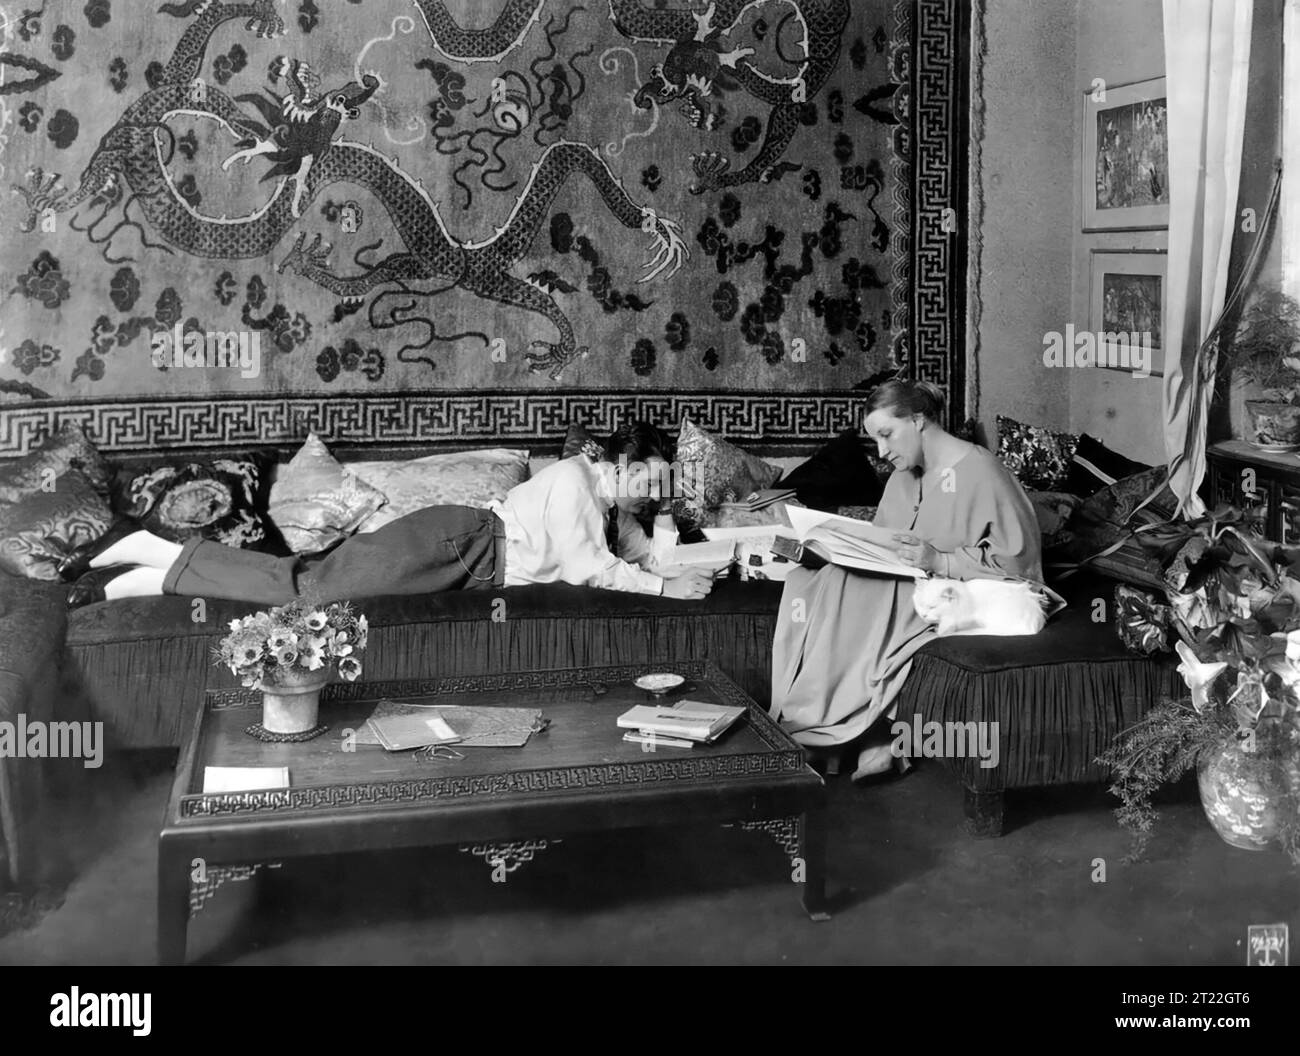 Fritz Lang. Photographie du réalisateur autrichien Fritz Lang avec sa femme, Thea von Harbou, dans leur appartement berlinois, vers 1923 Banque D'Images